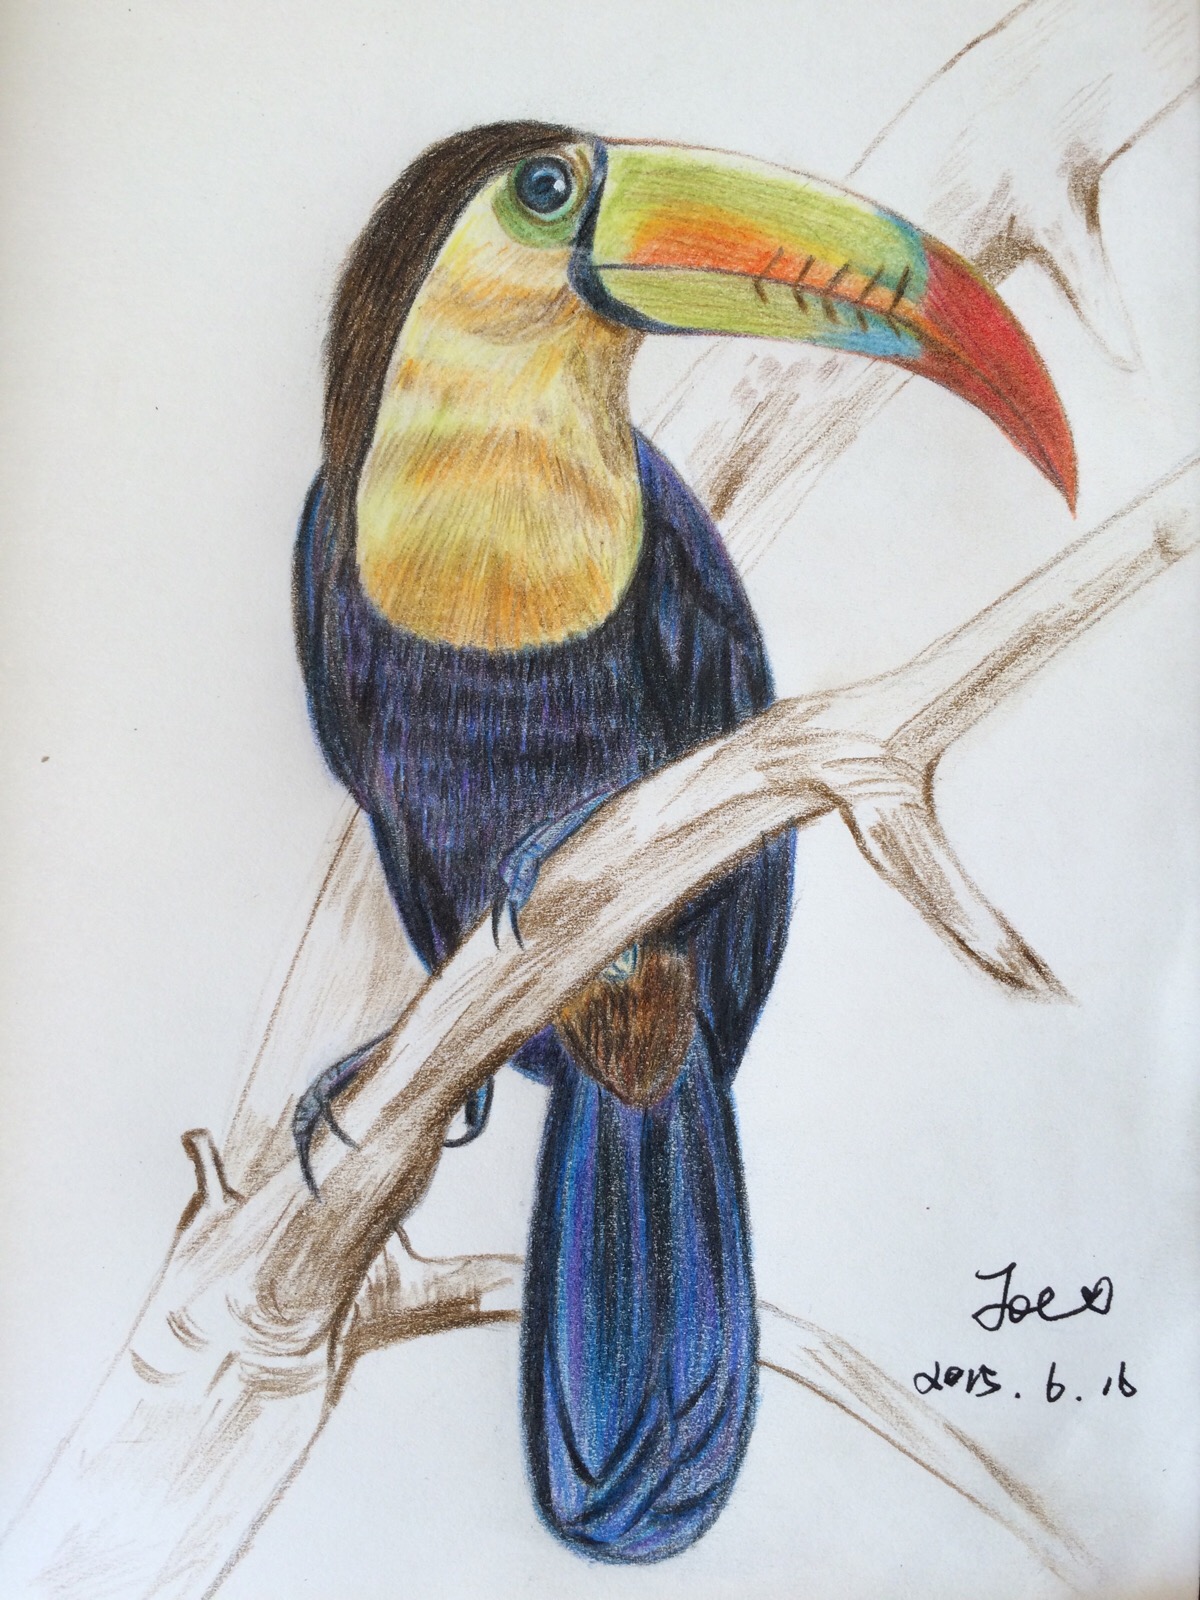 刚刚完成的彩色铅笔绘----厚嘴巨嘴鸟,第一次画,还算有点天赋.